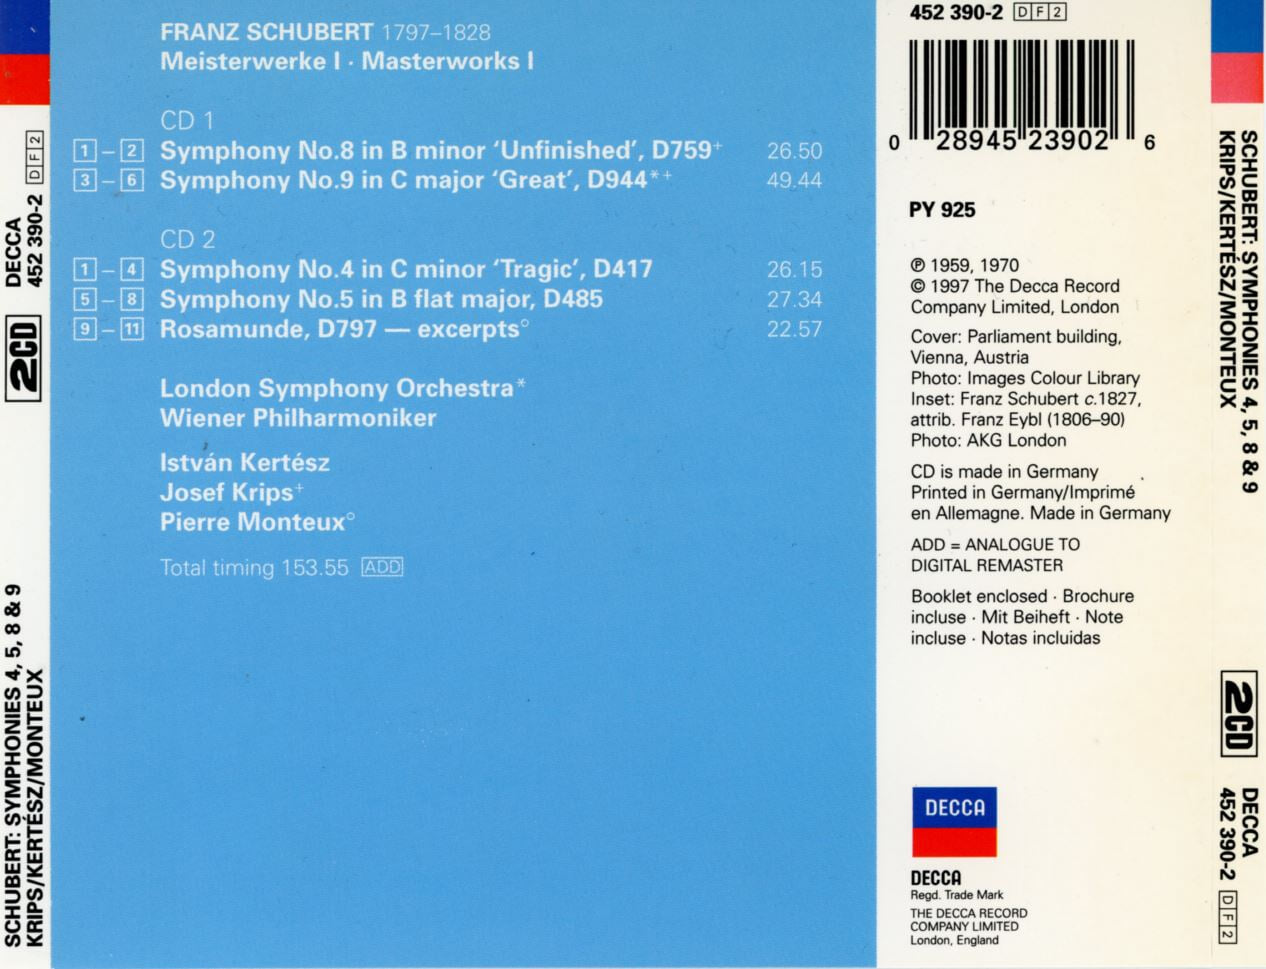 이스트반 케르테스 - Istvan Kertesz - Schubert Symphonies 4,5,8 & 9 2Cds [독일발매]